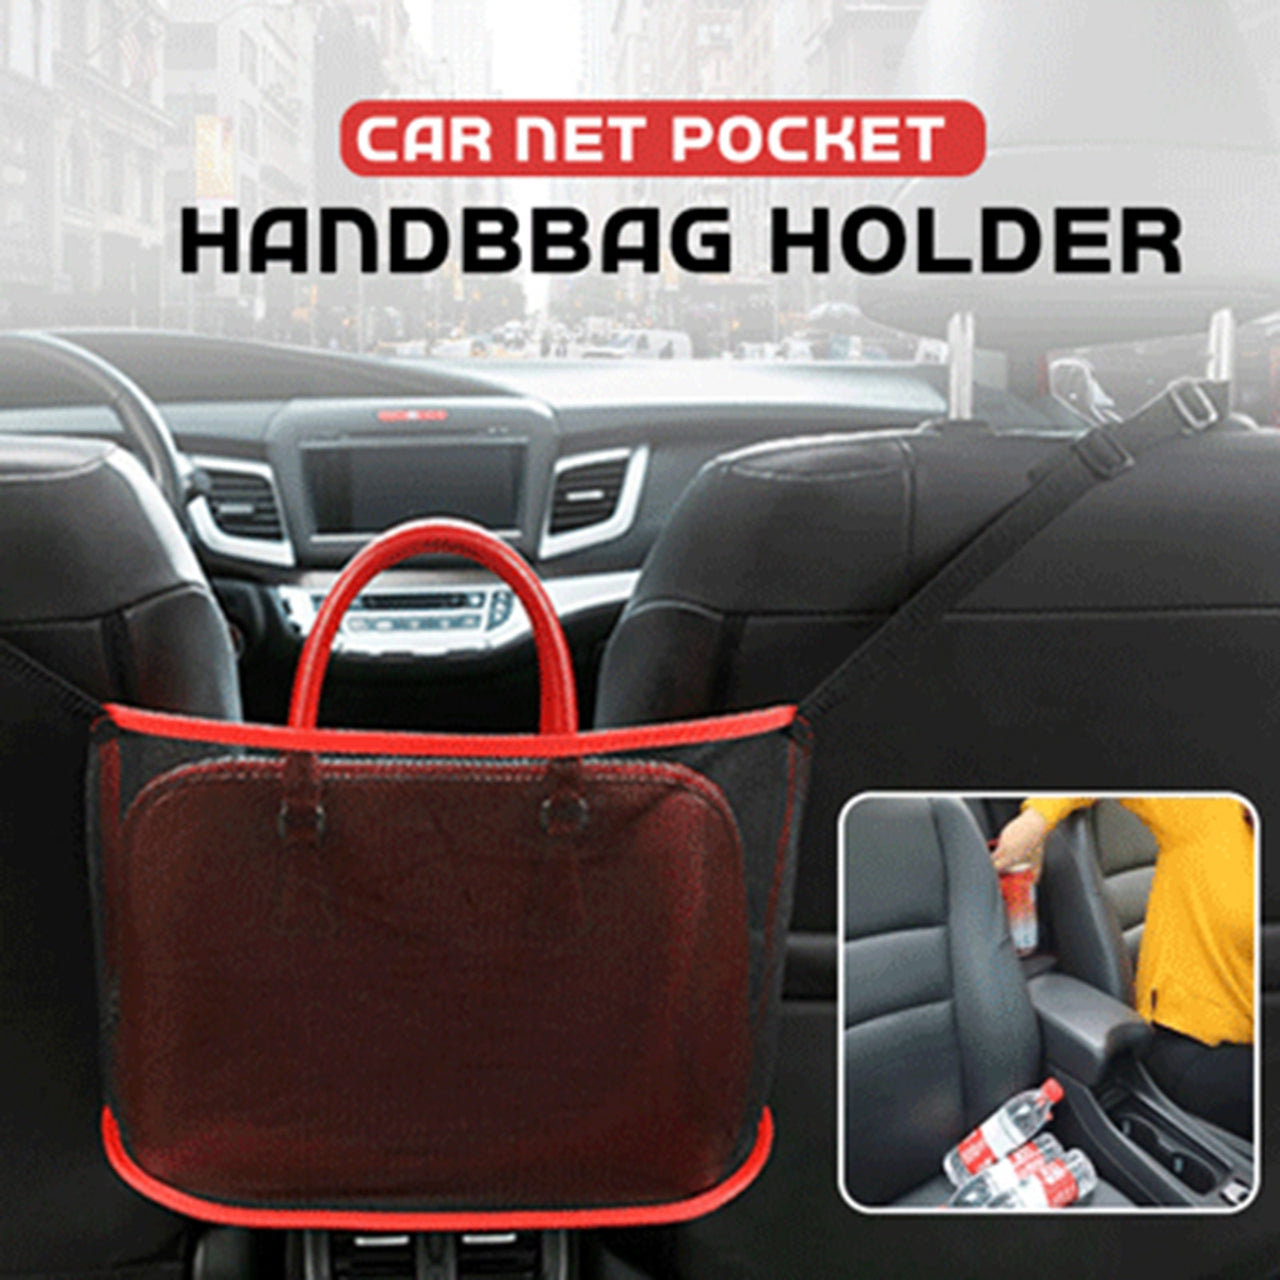 Car Net Pocket Handbag